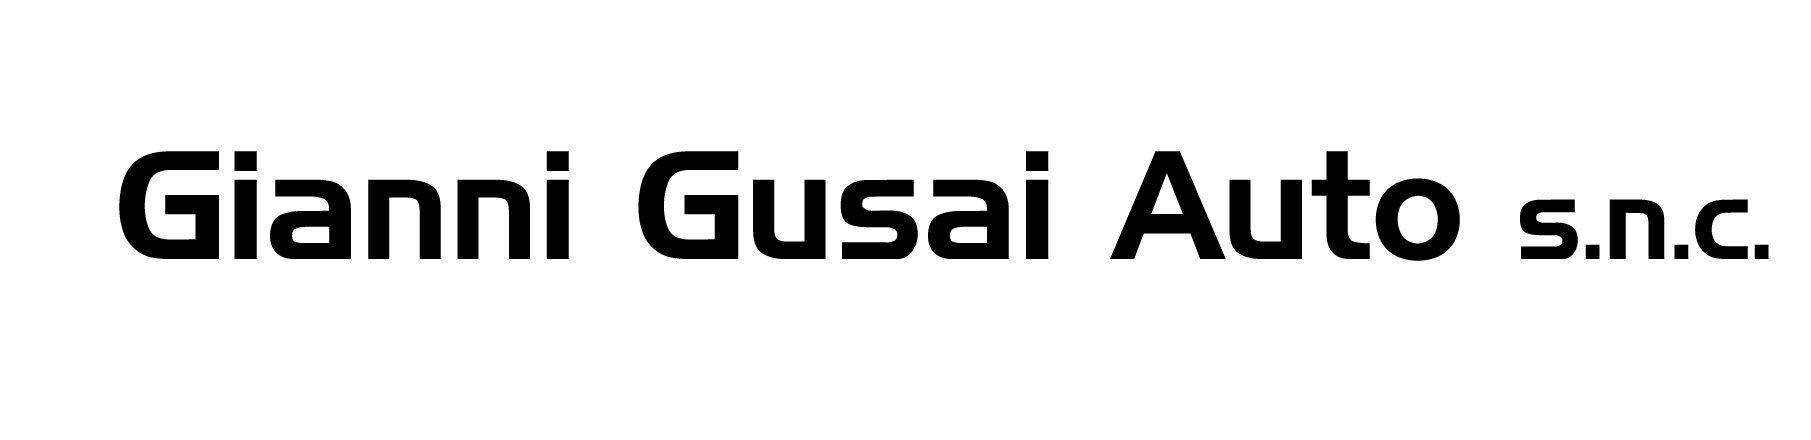 Logo Gusai Auto